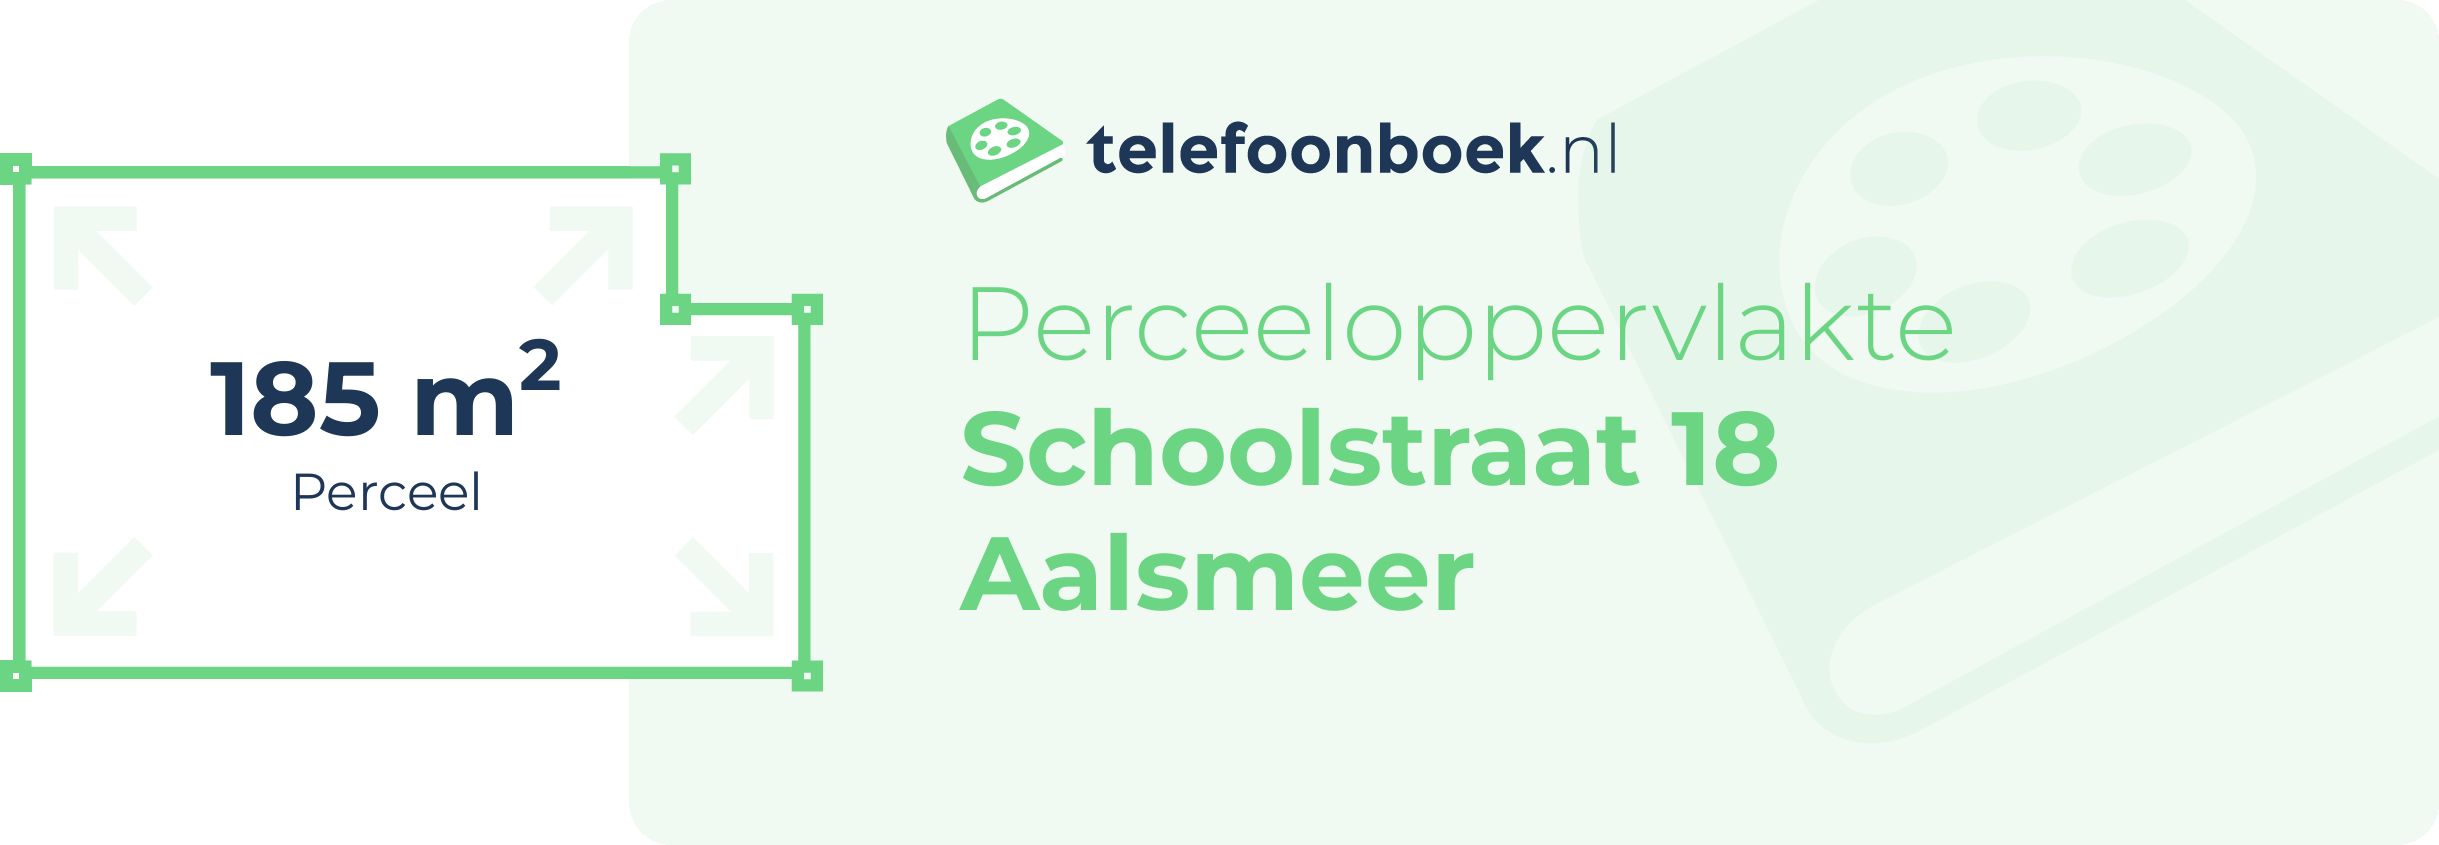 Perceeloppervlakte Schoolstraat 18 Aalsmeer